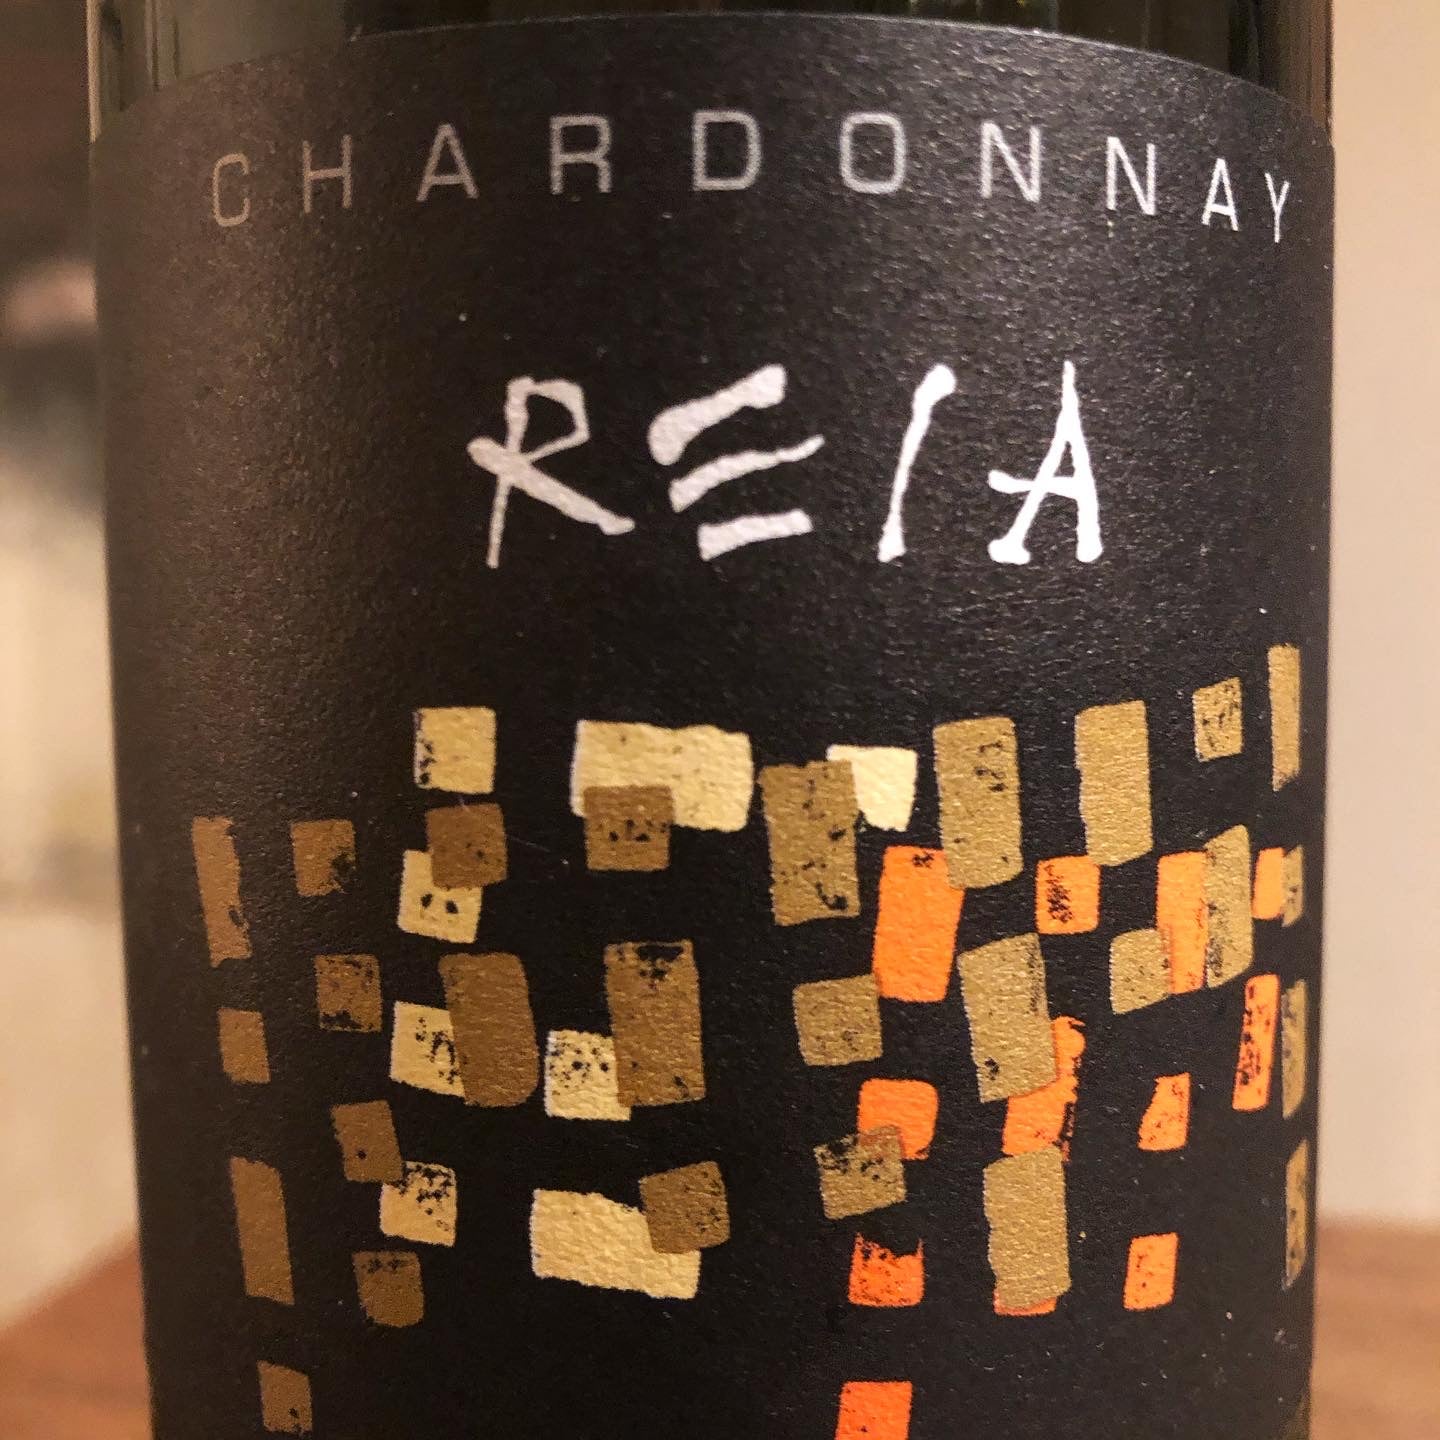 Chardonnay 2017, Reia